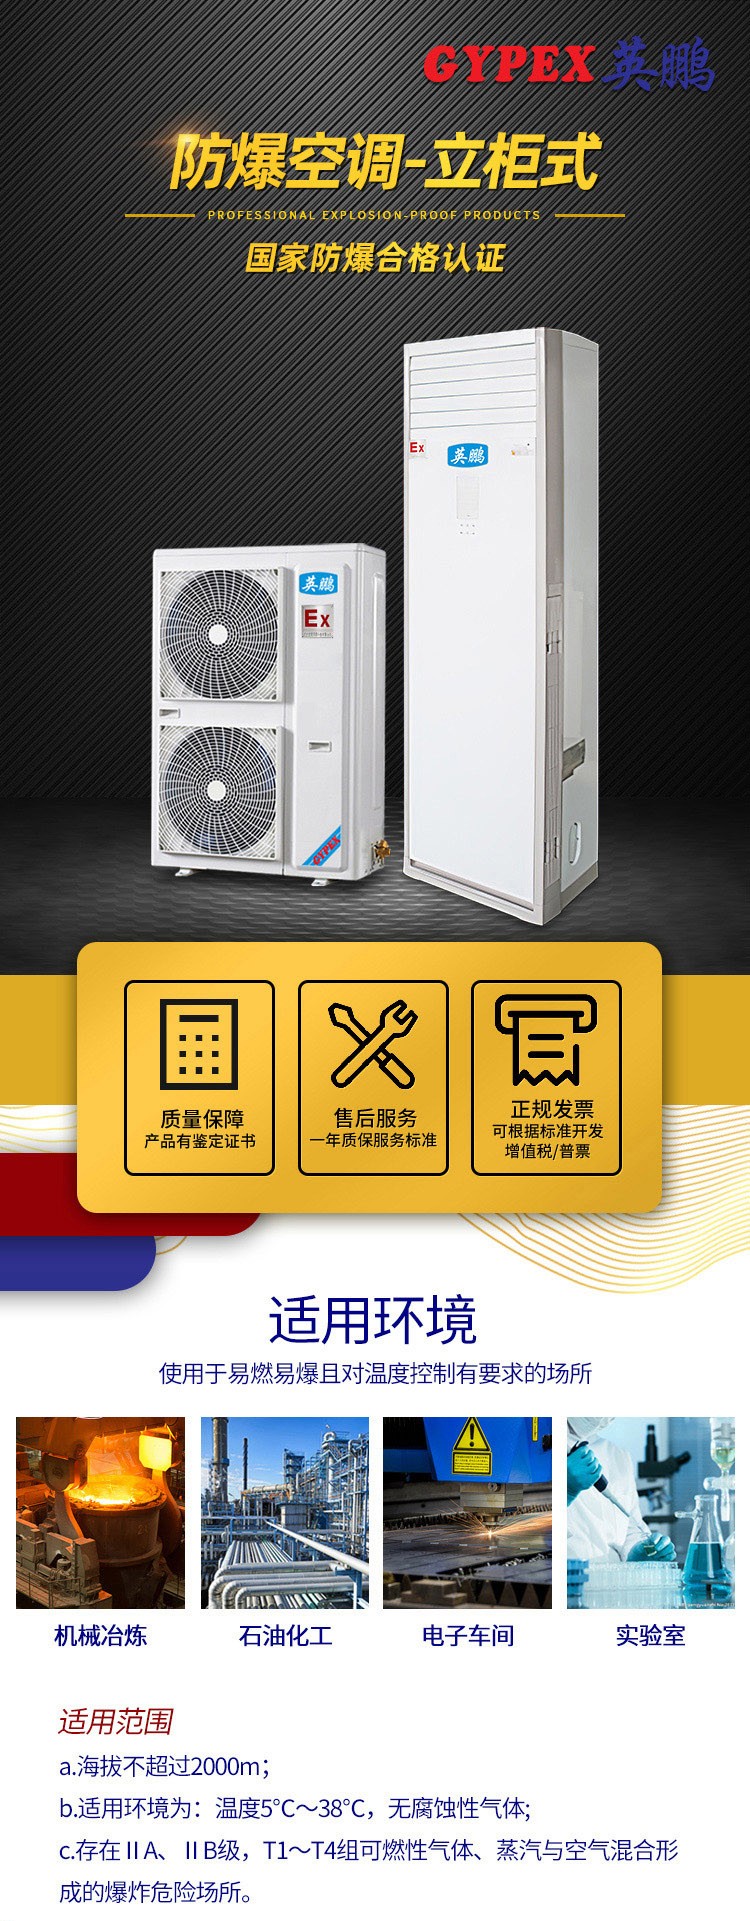 英鹏BFKT-5.0新疆化工厂立柜式2匹防爆空调 防爆空调,立柜式防爆空调,化工防爆空调,工业防爆空调